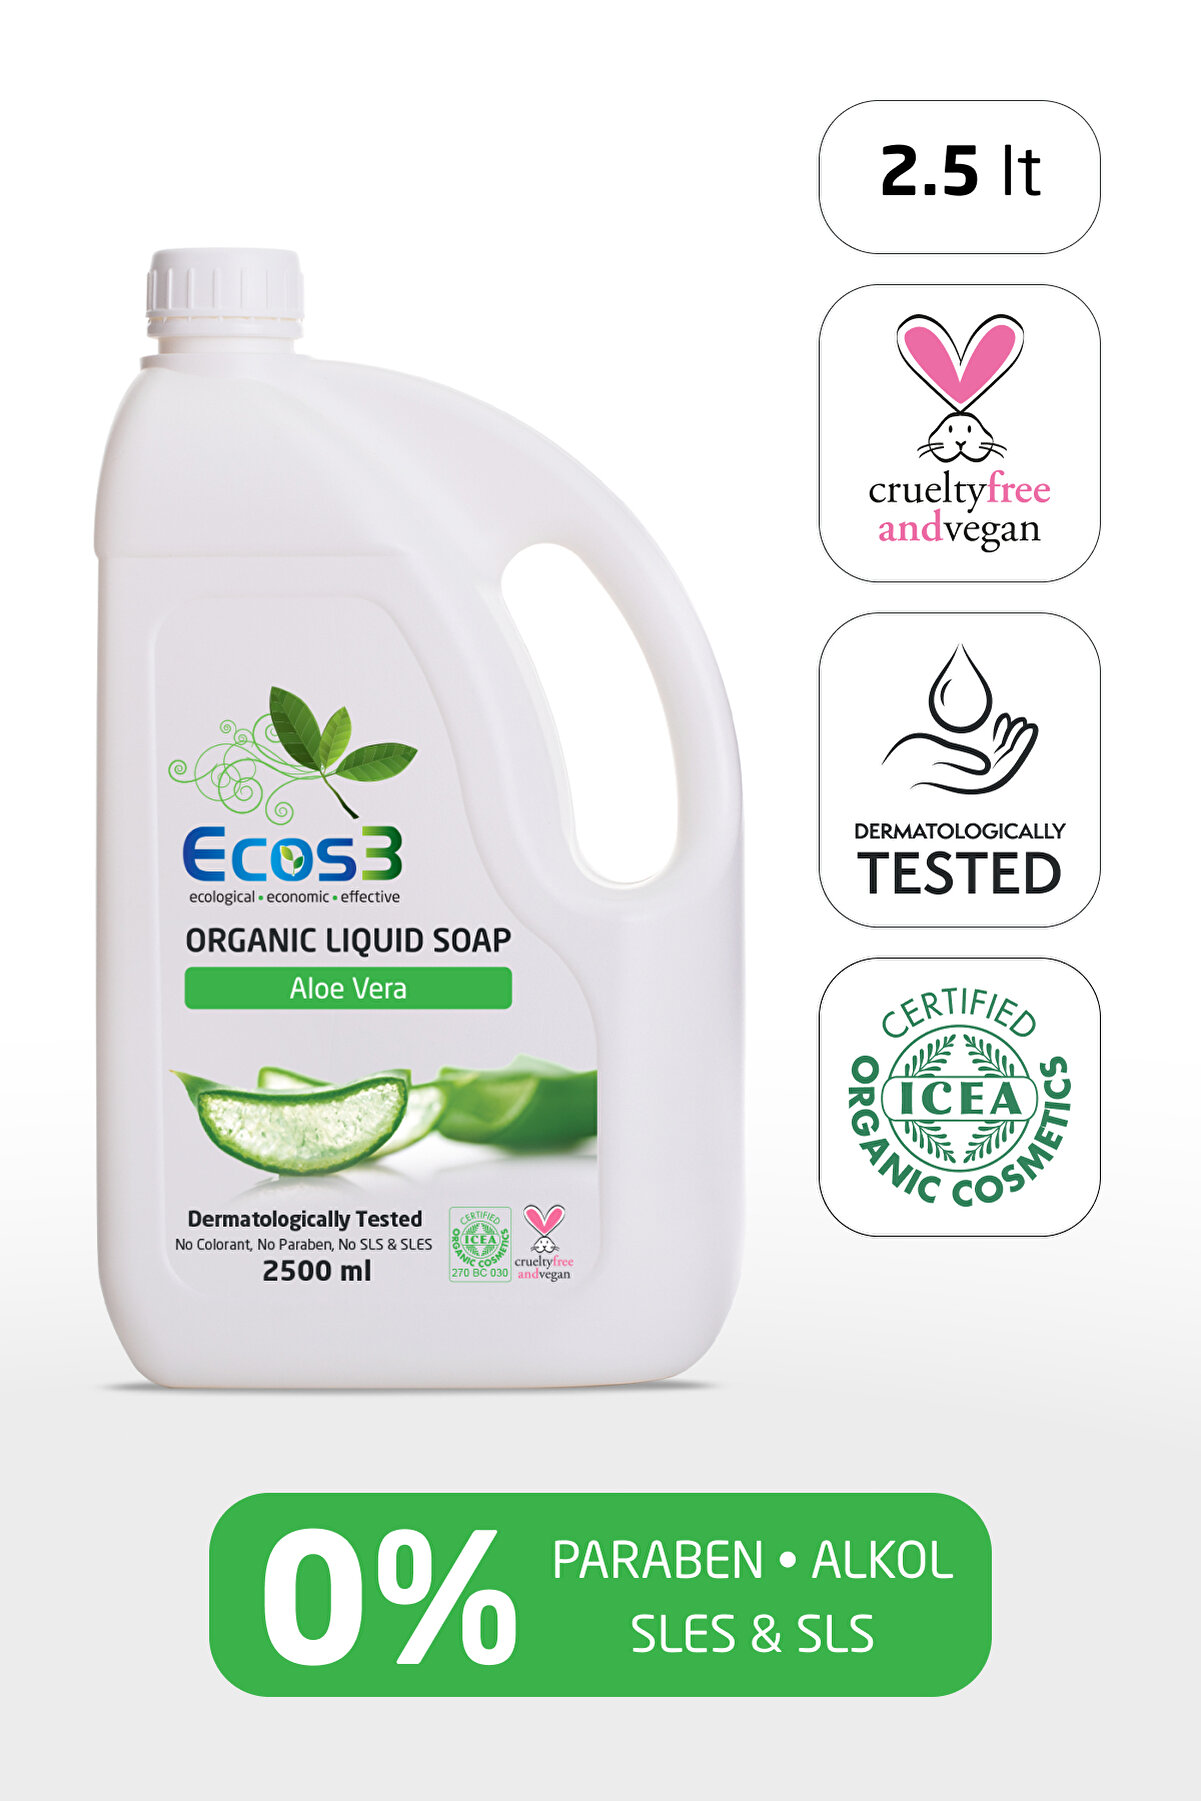 Ecos3 Sıvı Sabun, Organik & Vegan Sertifikalı, Ekolojik, Hipoalerjenik, Aloe Vera, 2500ml